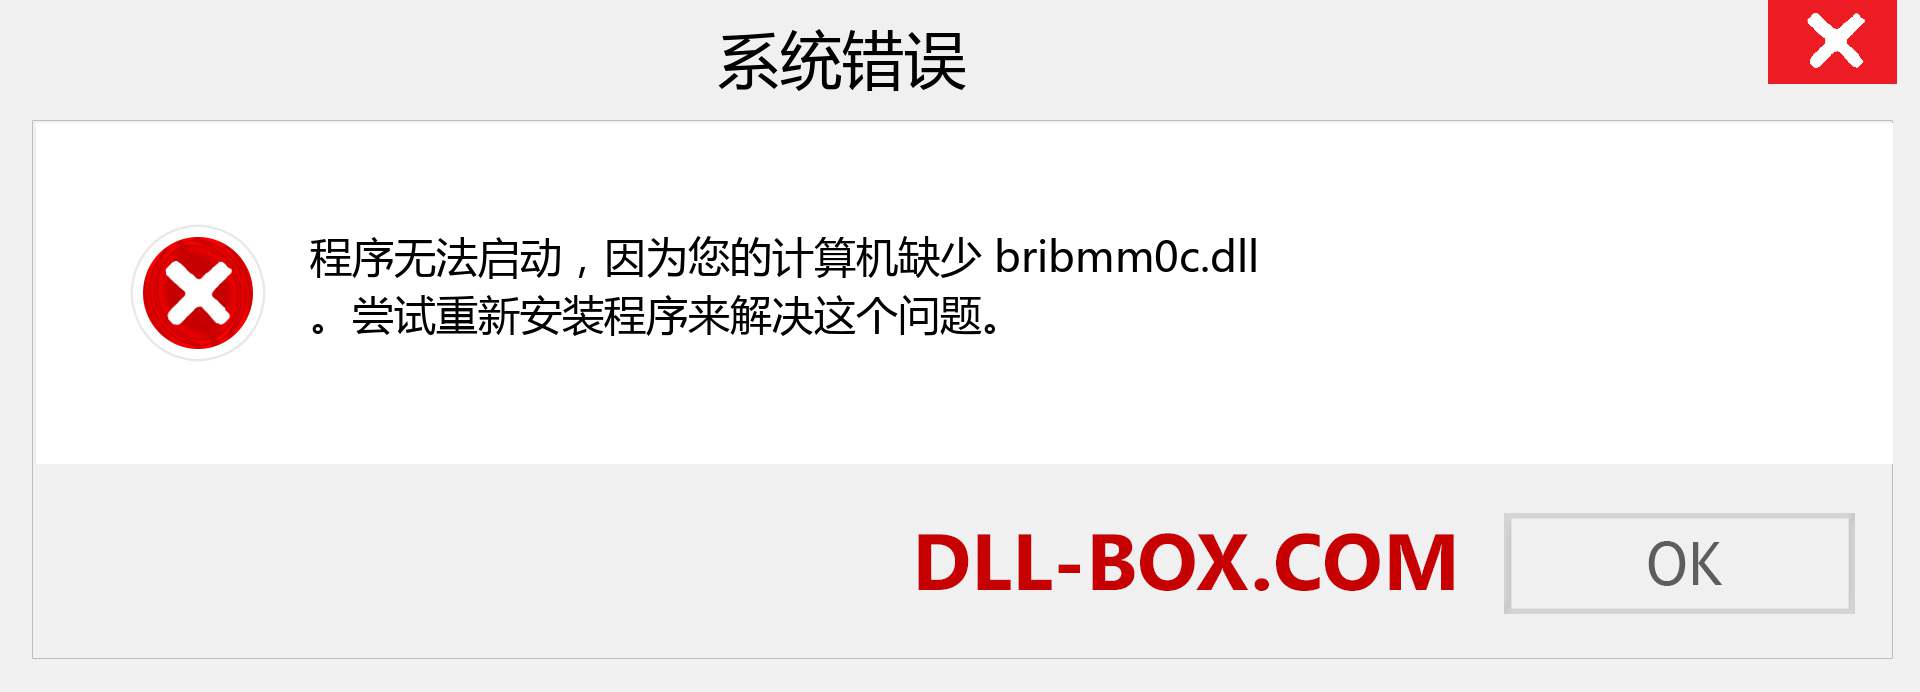 bribmm0c.dll 文件丢失？。 适用于 Windows 7、8、10 的下载 - 修复 Windows、照片、图像上的 bribmm0c dll 丢失错误